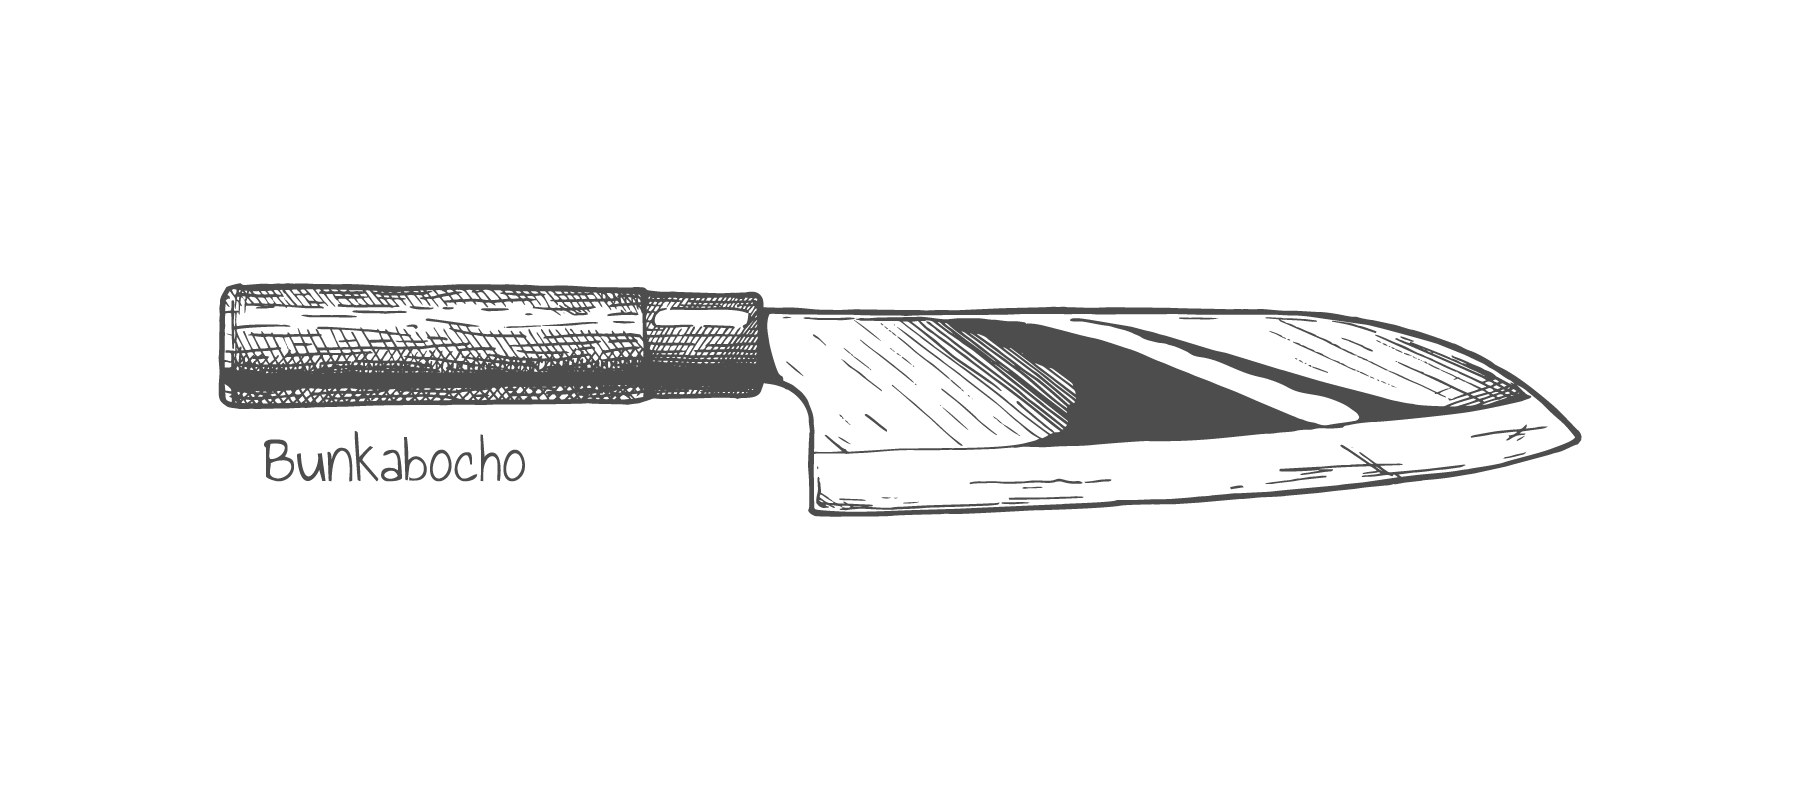 Santoku Japanese knife shape